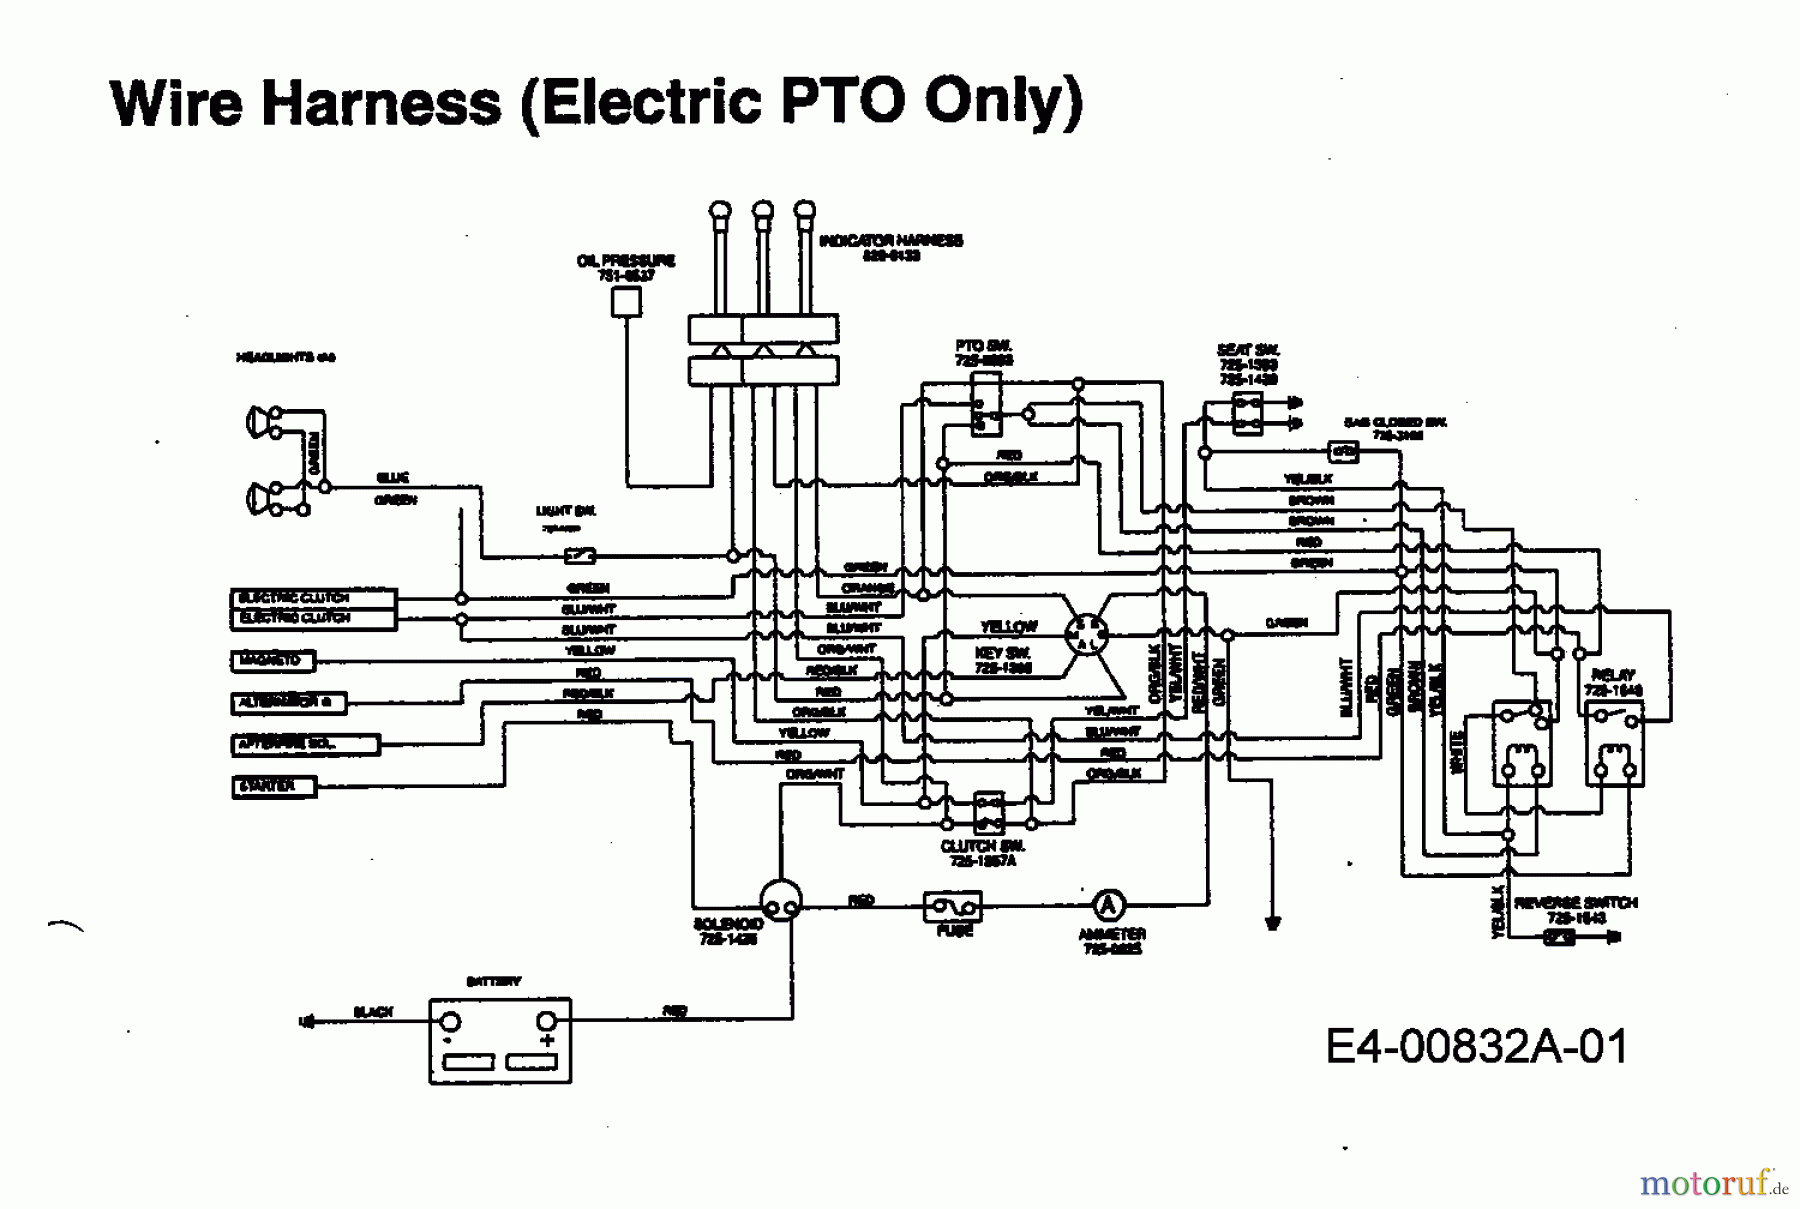  Edenparc Tracteurs de pelouse H 155102 13AD790N608  (1997) Plan électrique embrayage électromagnétique